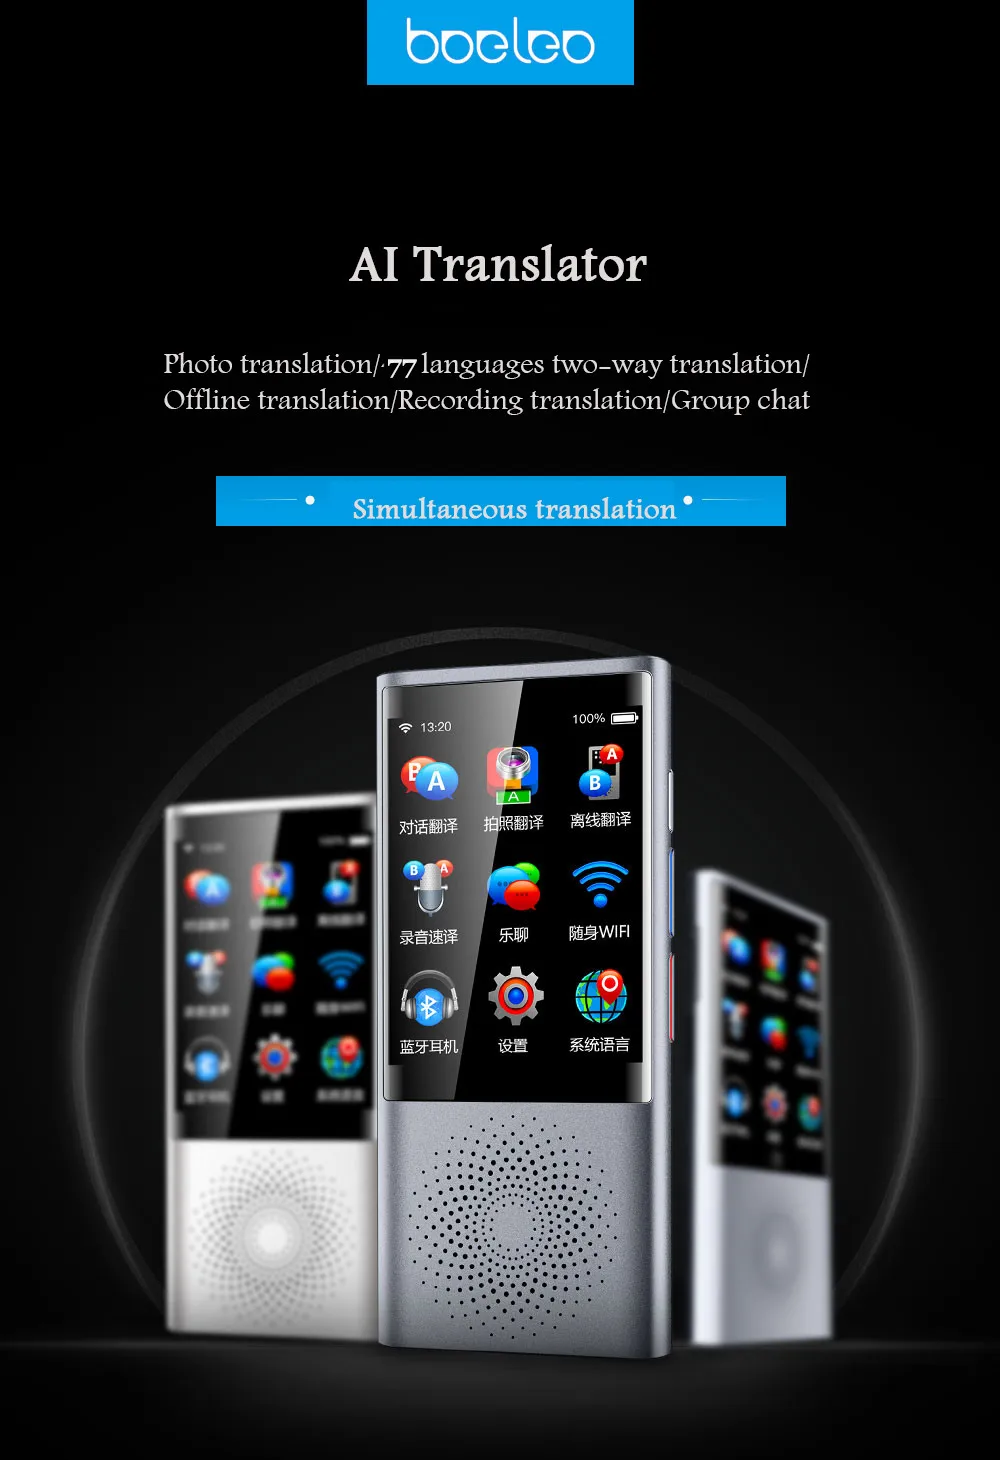 AI сенсорный экран умный голосовой переводчик английский автономный перевод 77 многоязычный Глобальный бизнес путешествия